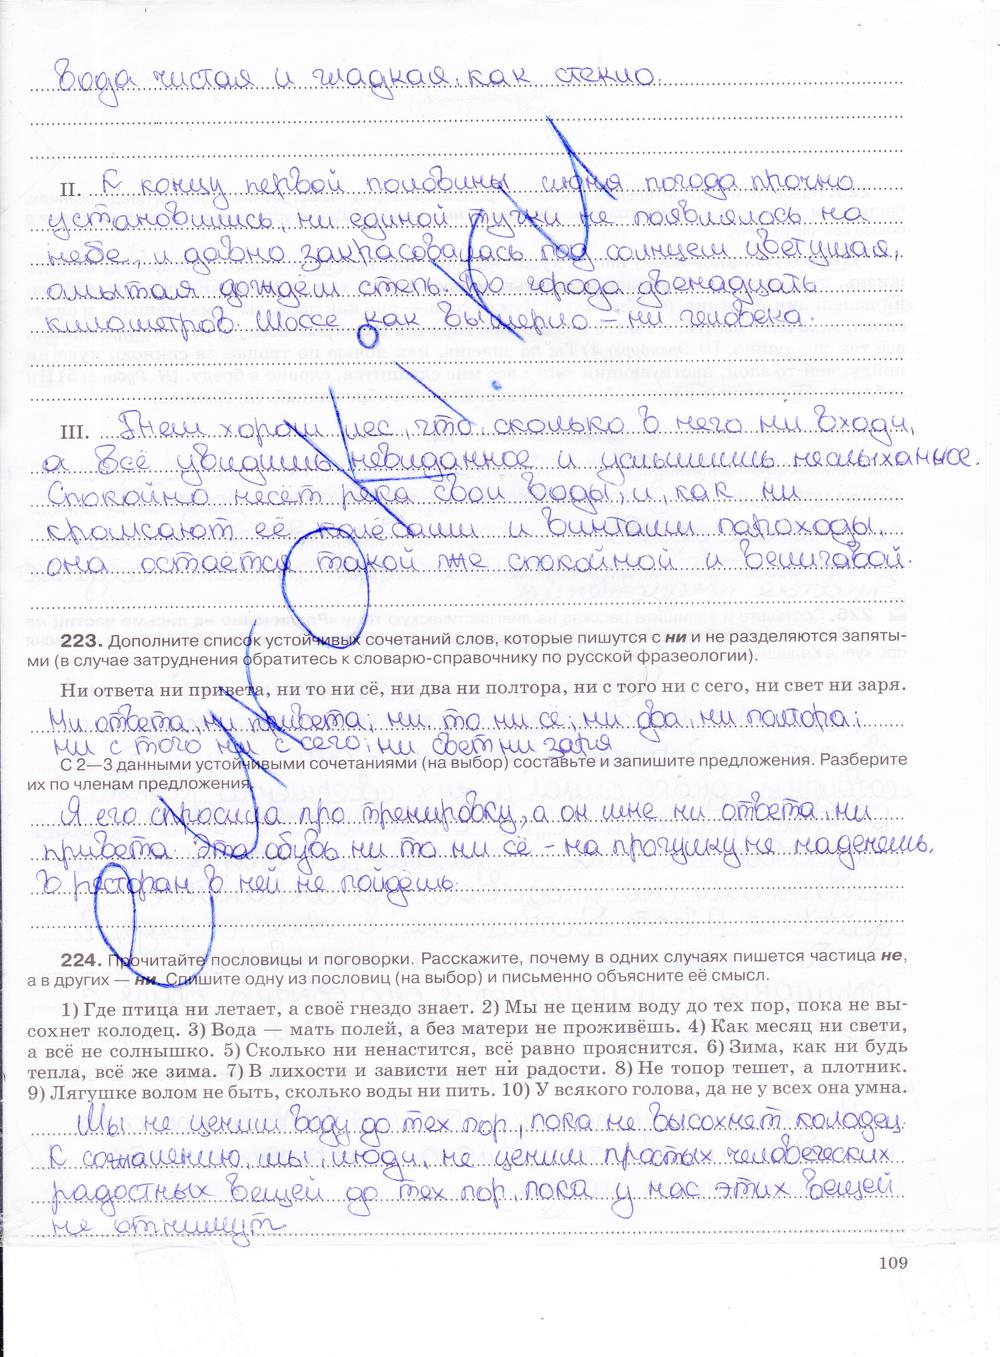 гдз 7 класс рабочая тетрадь страница 109 русский язык Ларионова